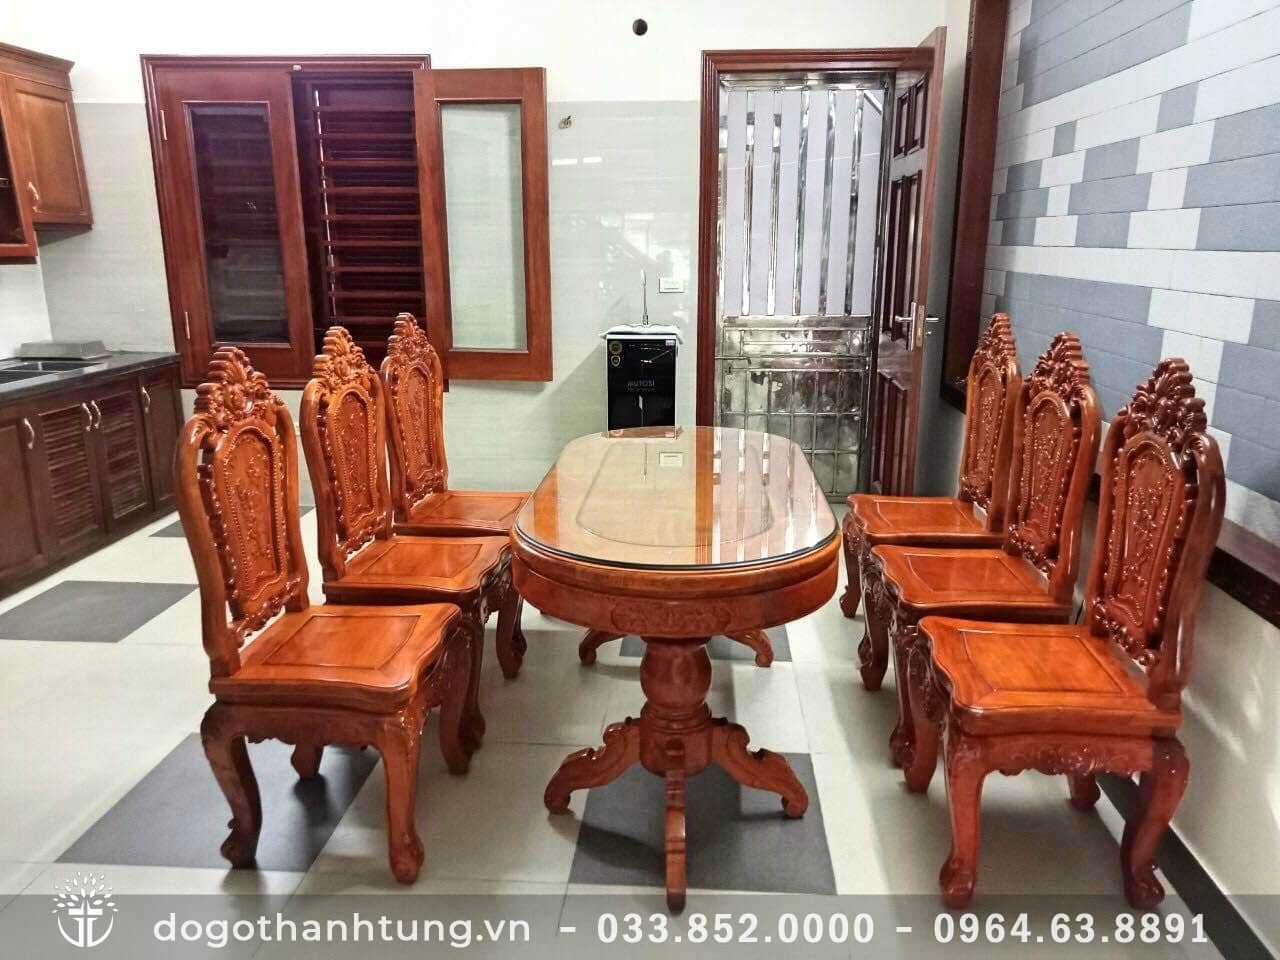 Bộ bàn Ăn tròn gỗ gõ đỏ nguyên khối chạm hoa 6 ghế của Đồ gỗ Gia Lai là sản phẩm ấn tượng nhất trong năm